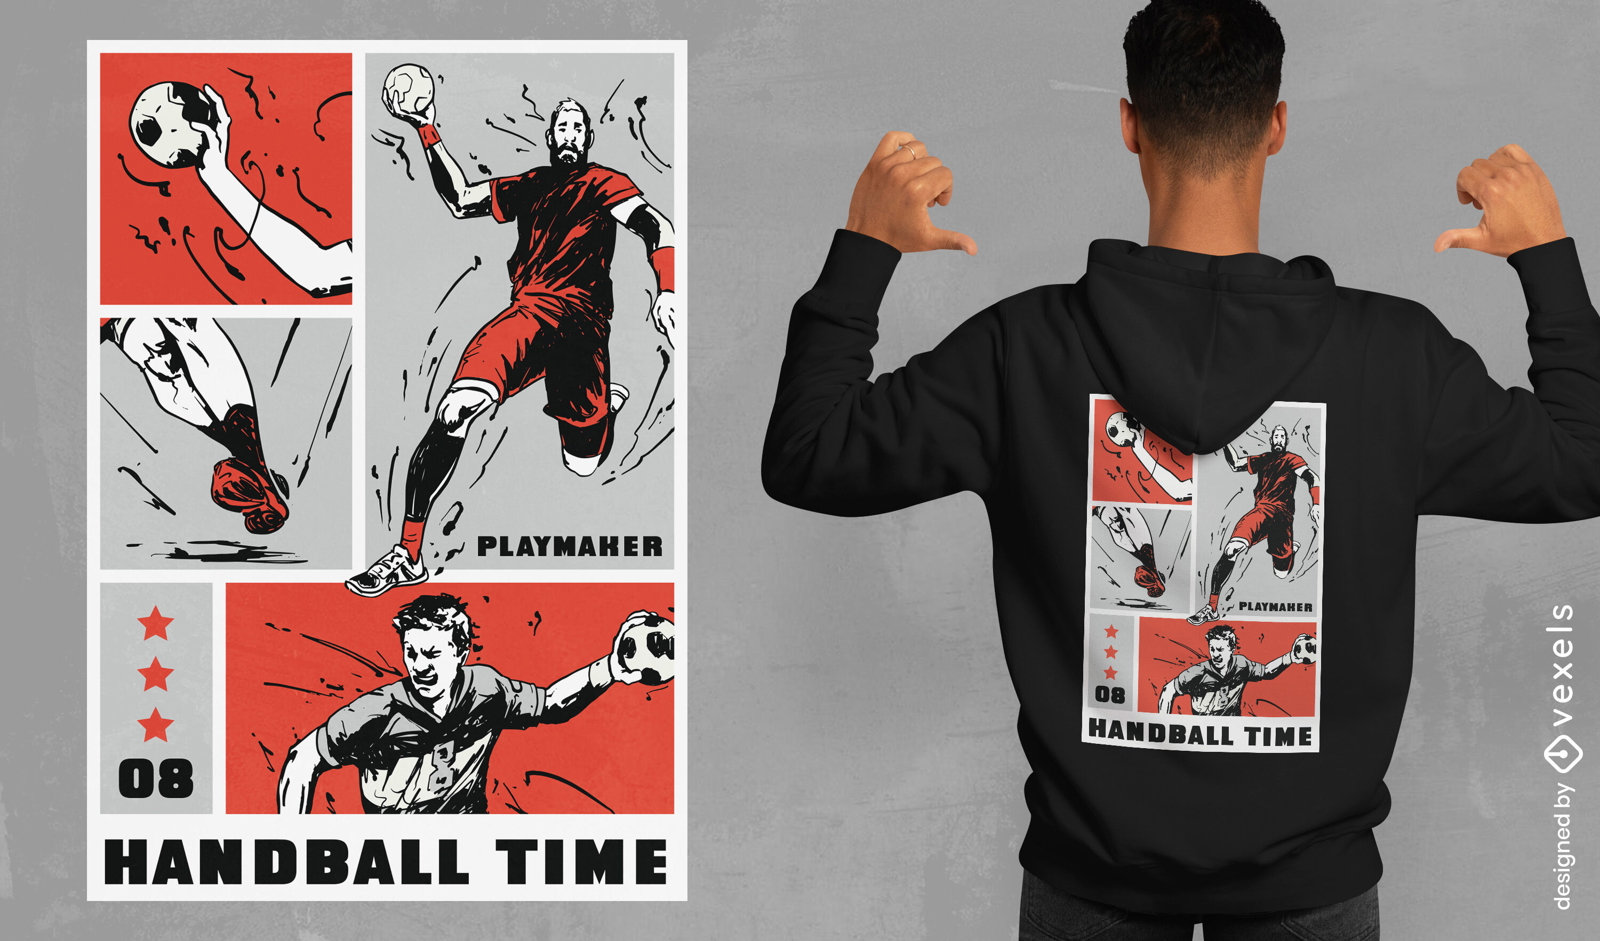 Diseño de camiseta cómica de jugadores deportivos de balonmano.